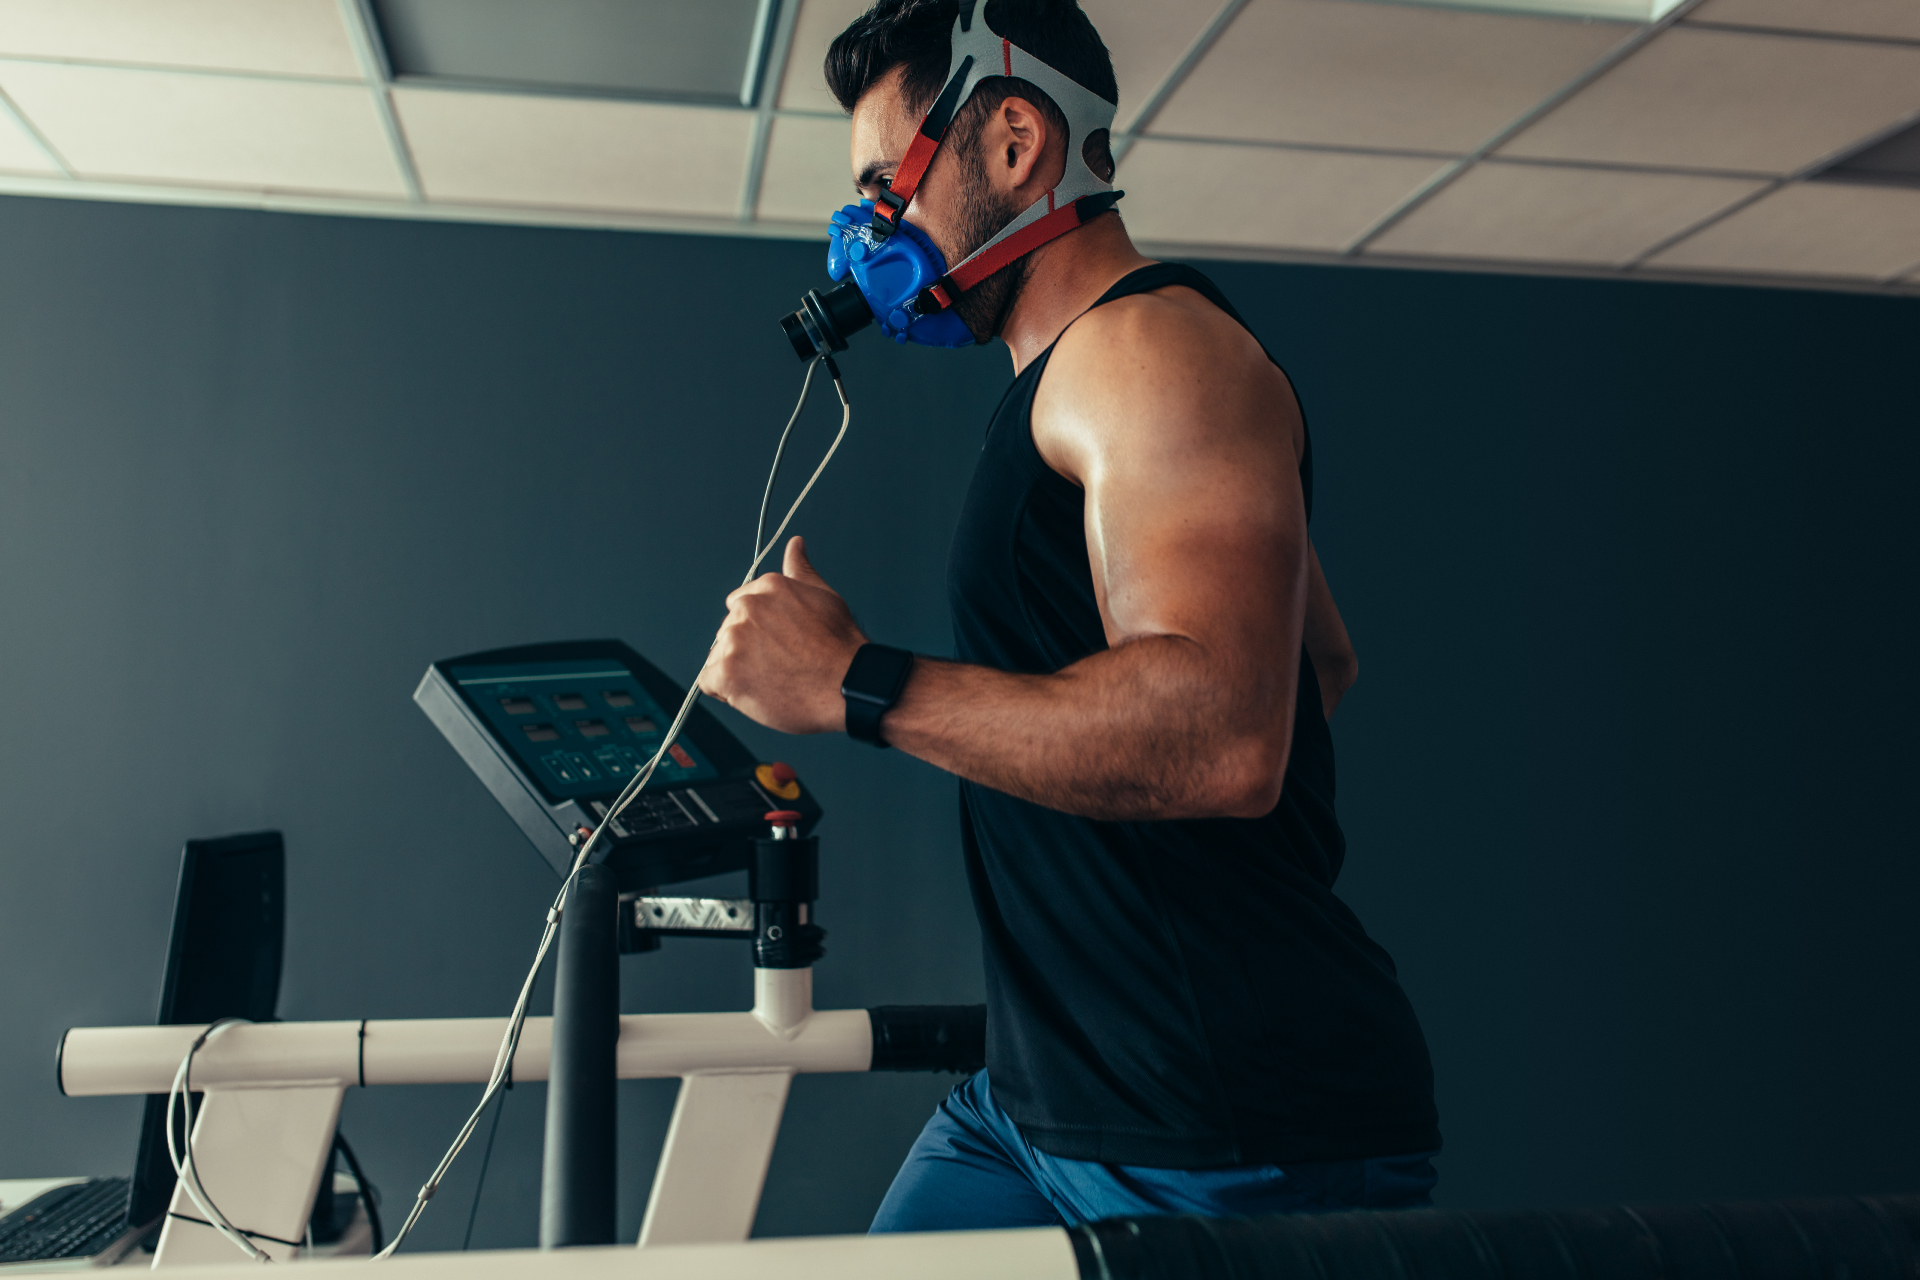 Для качественного анализа анаэробного порога спортсмен тренируется в специальной маске, которая измеряет потребление кислорода